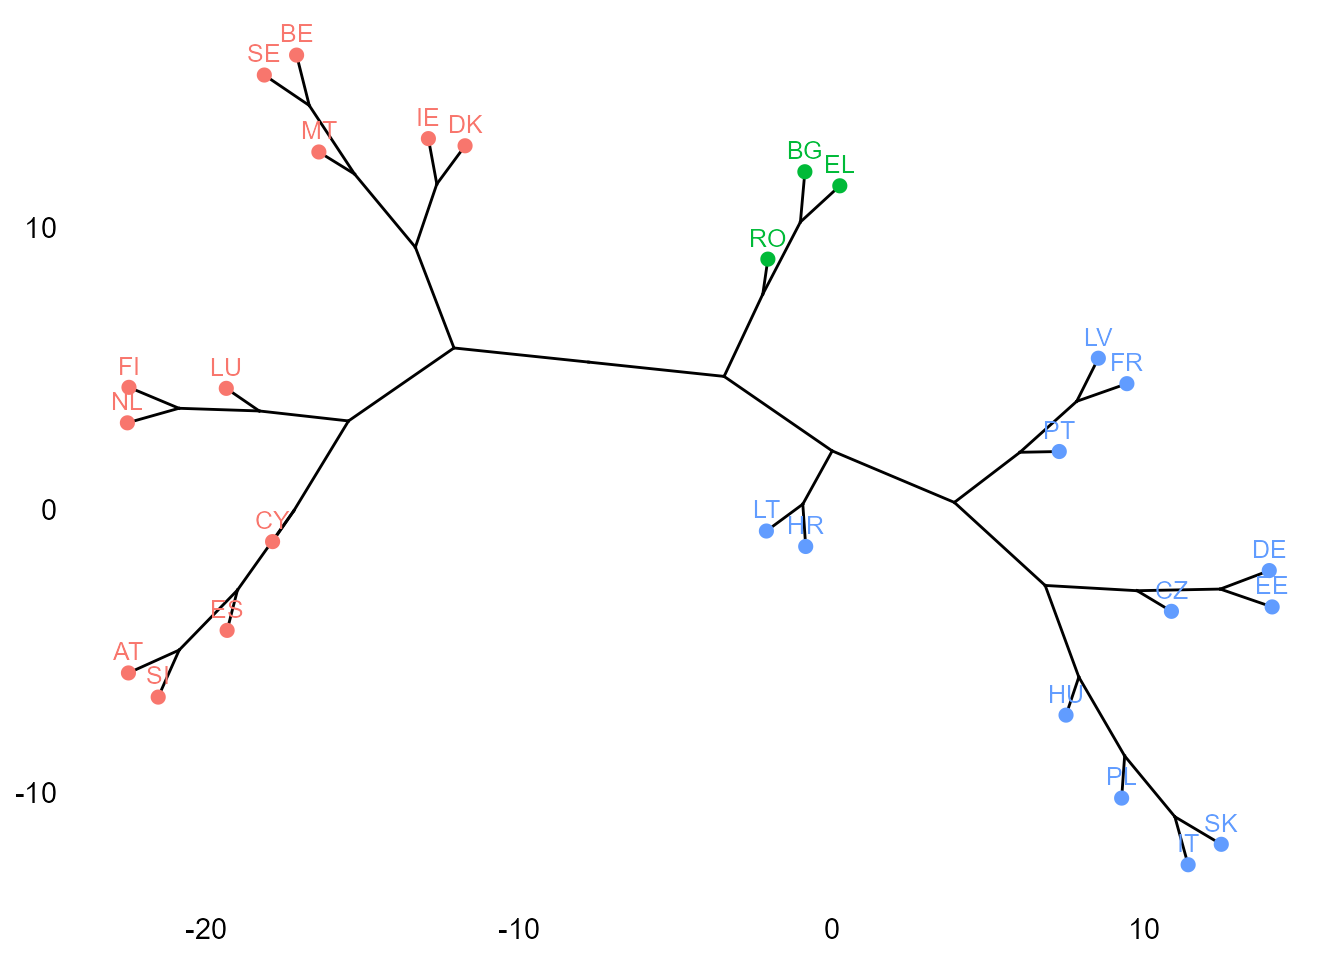 Clusterización jerárquica con distancias euclídeas al cuadrado (filograma): método de Ward.